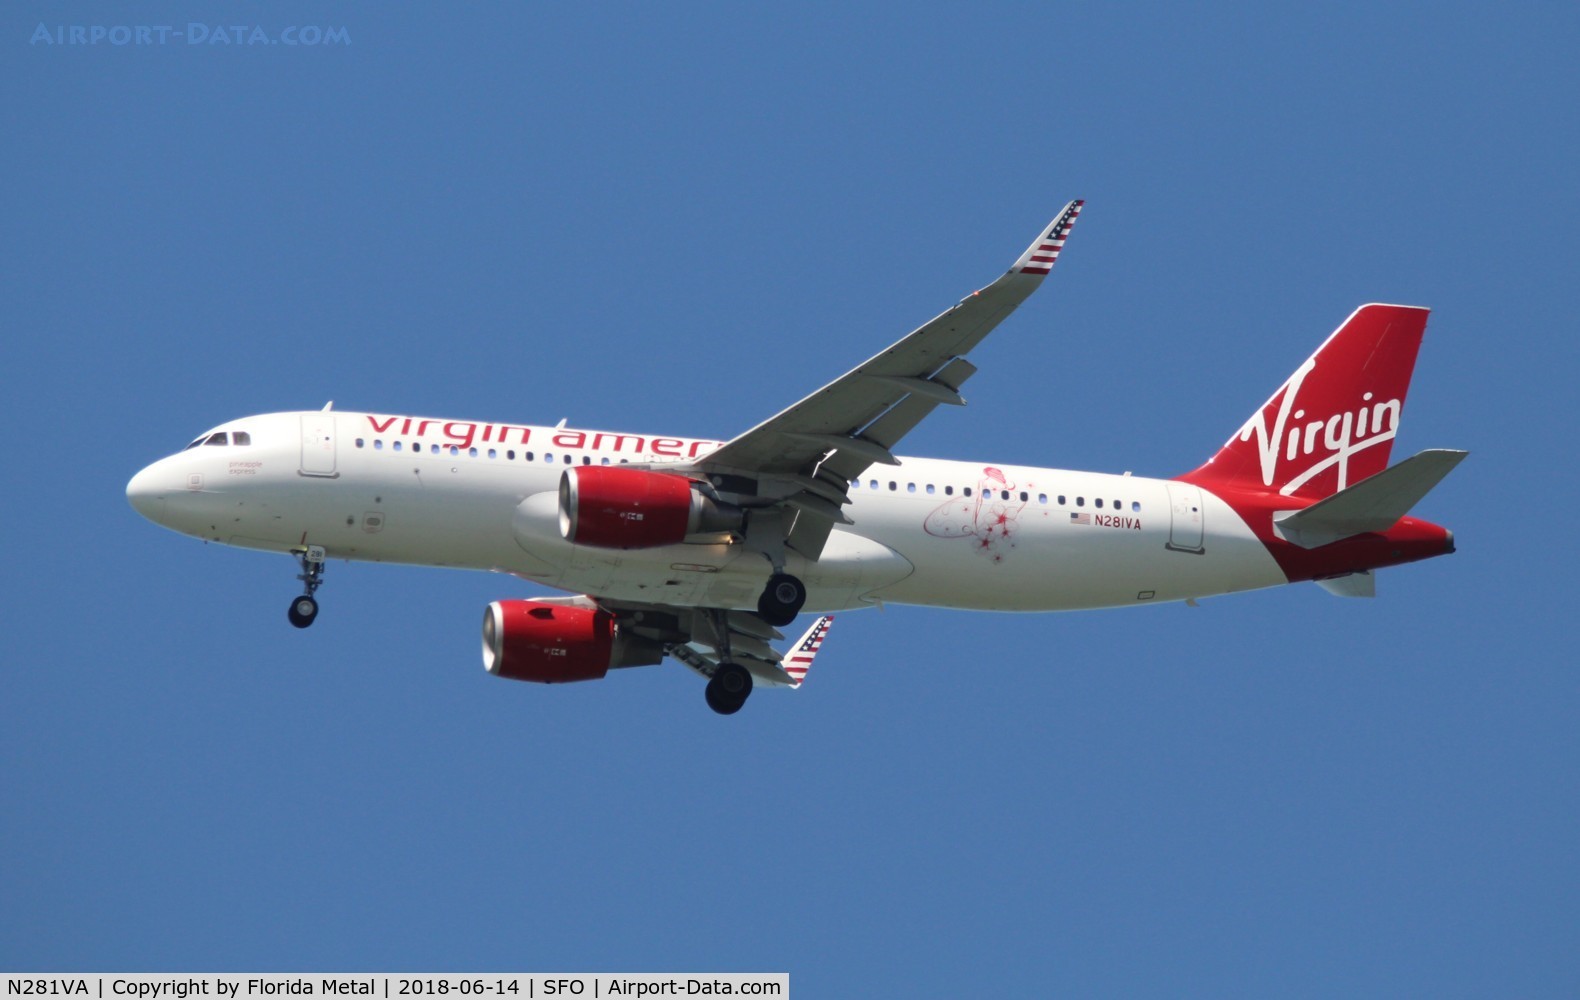 N281VA, 2015 Airbus A320-214 C/N 6669, Virgin America